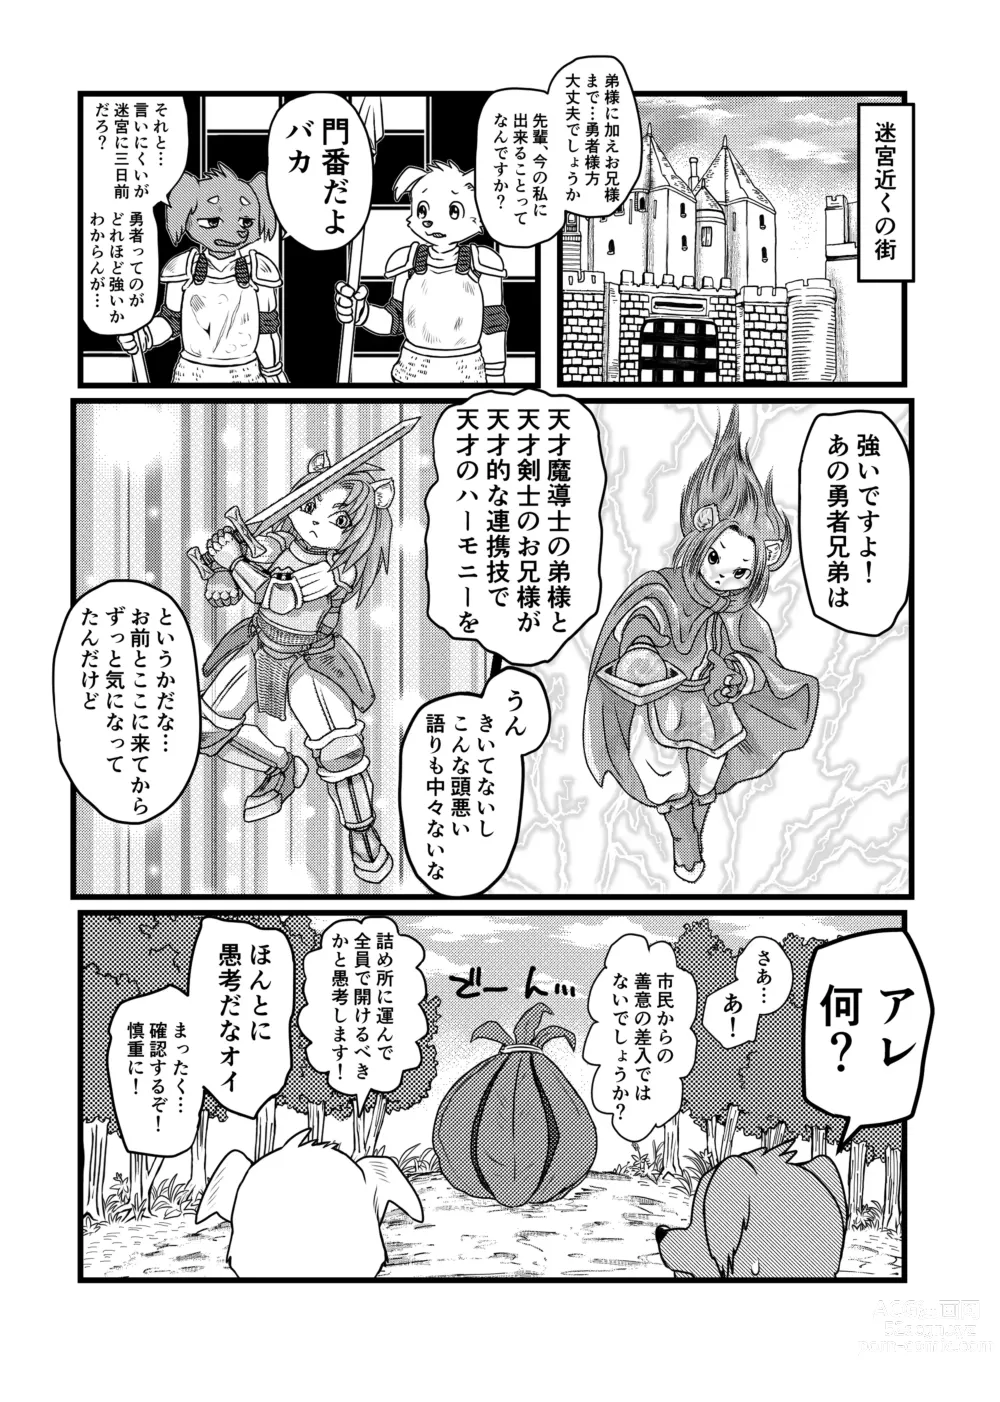 Page 21 of doujinshi Inma Quest Meikyuu Hen